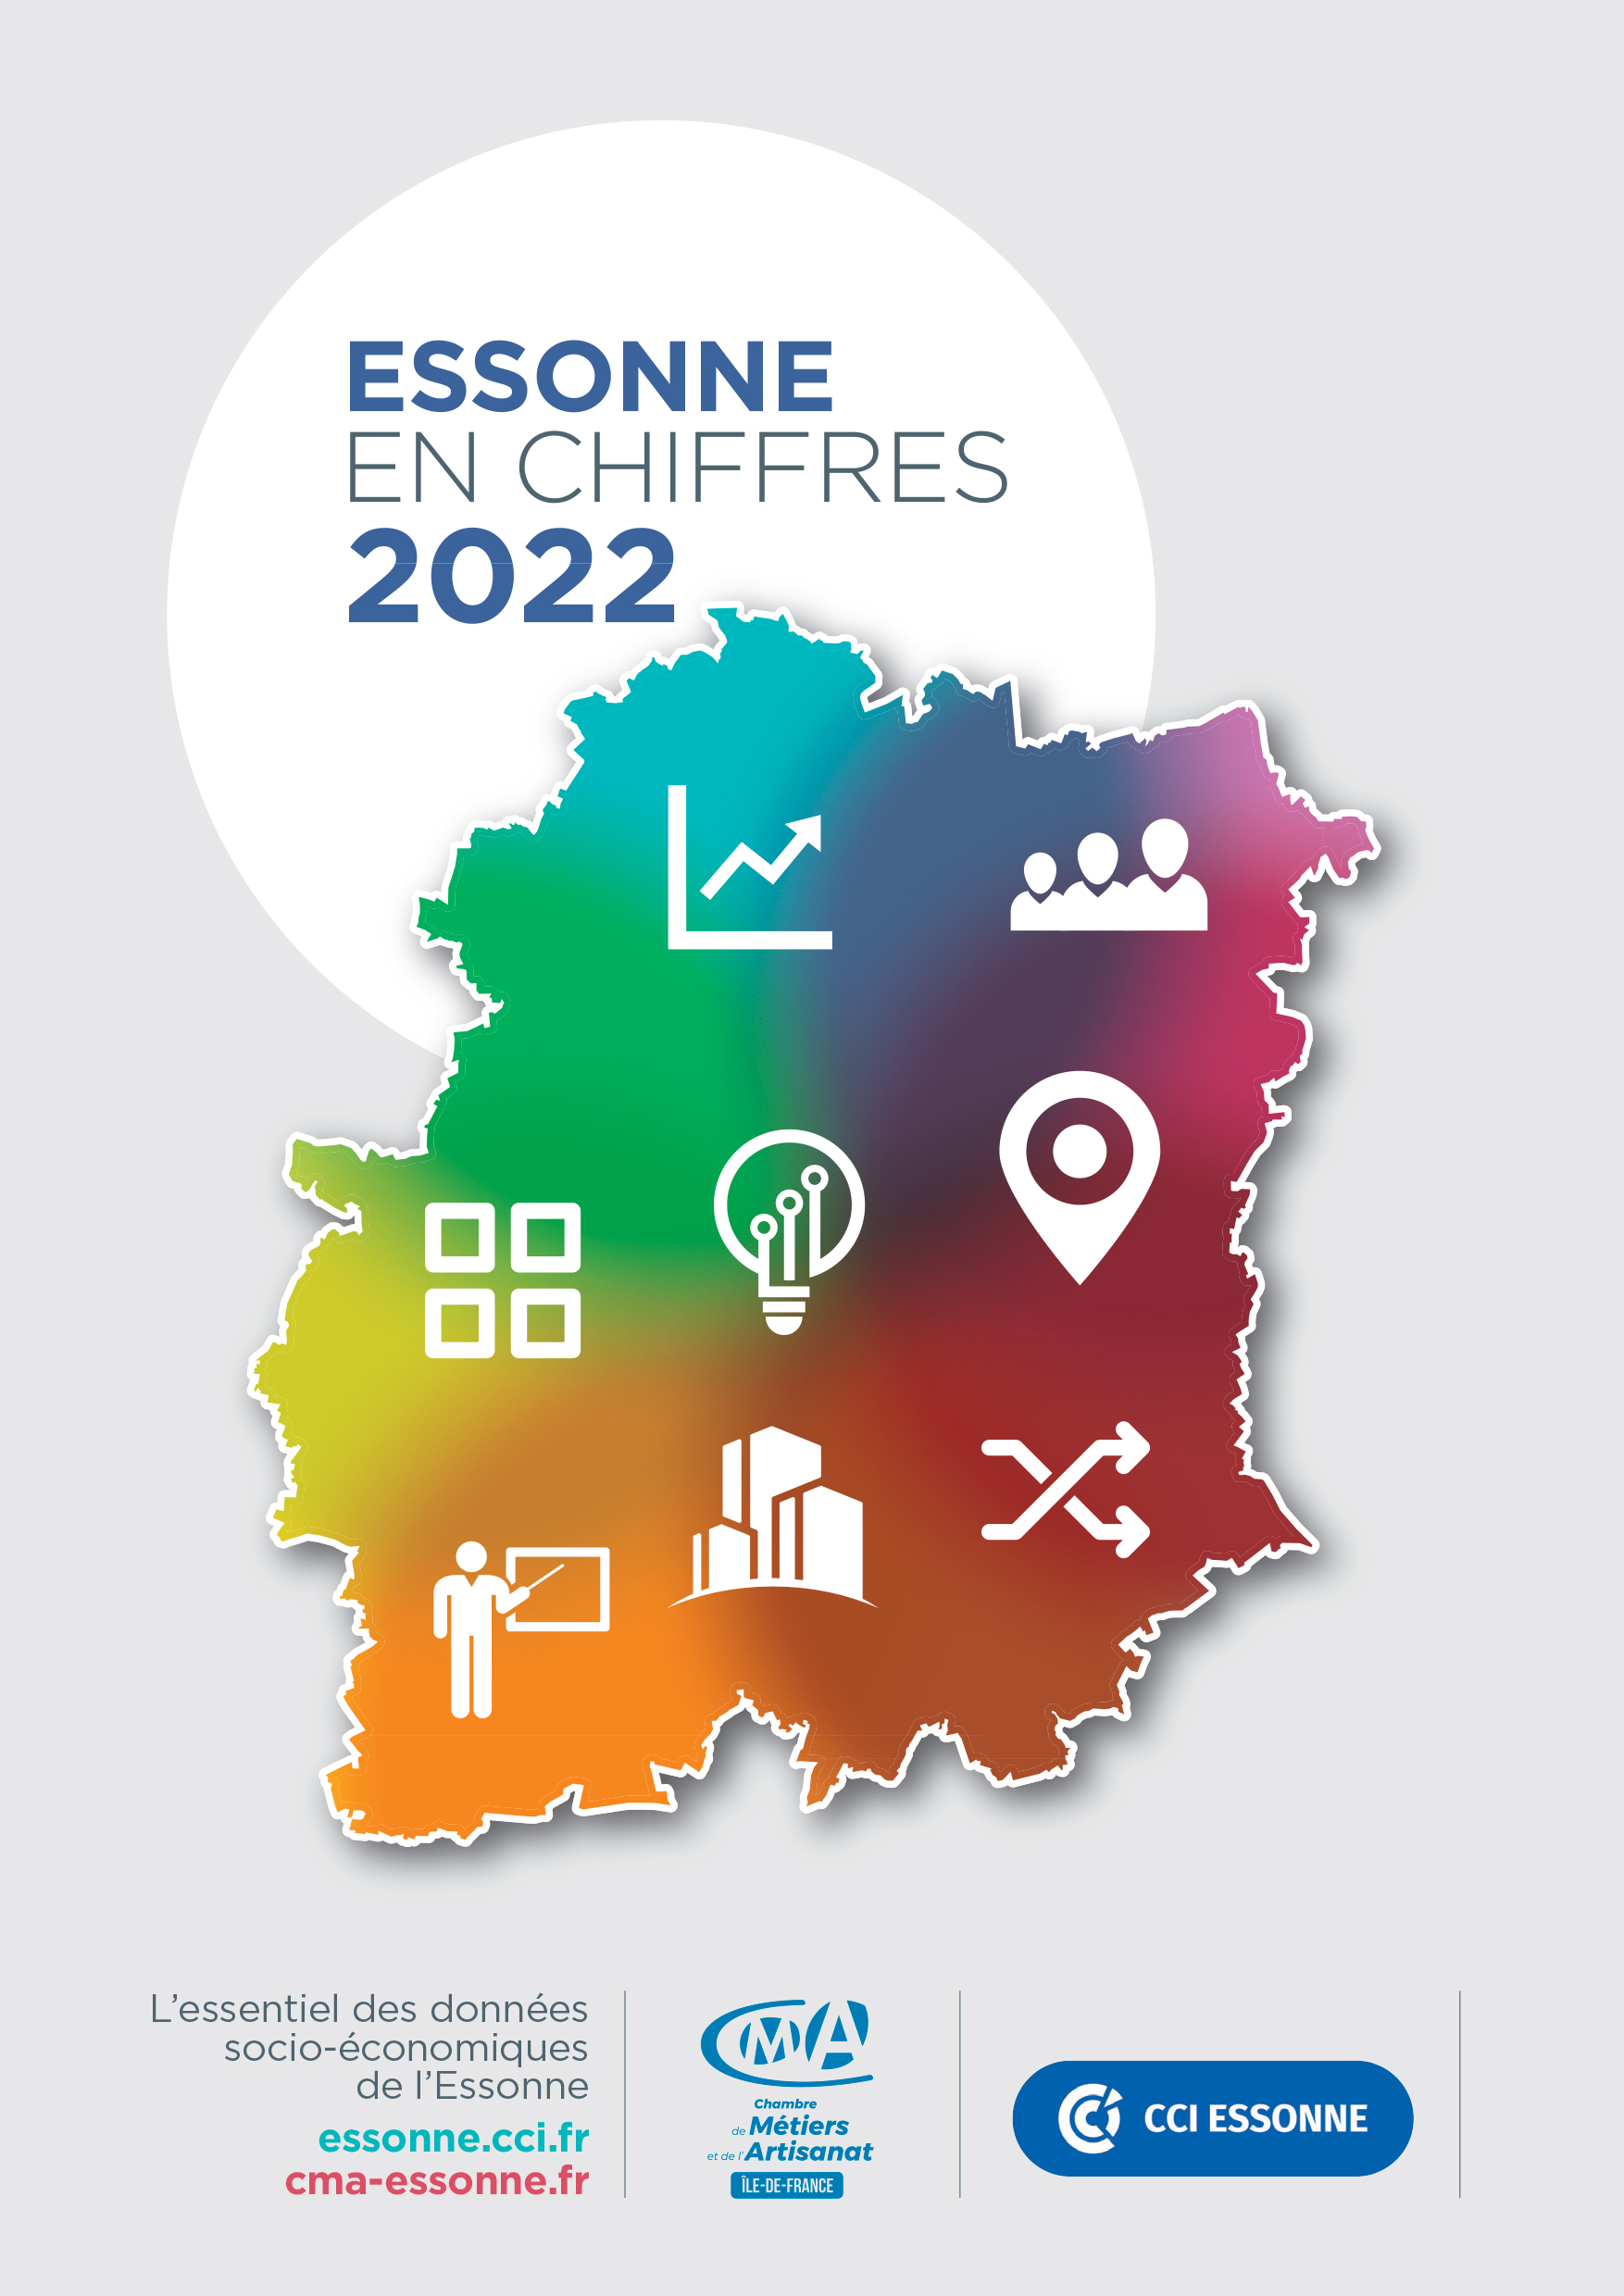 Essonne en chiffres 2022